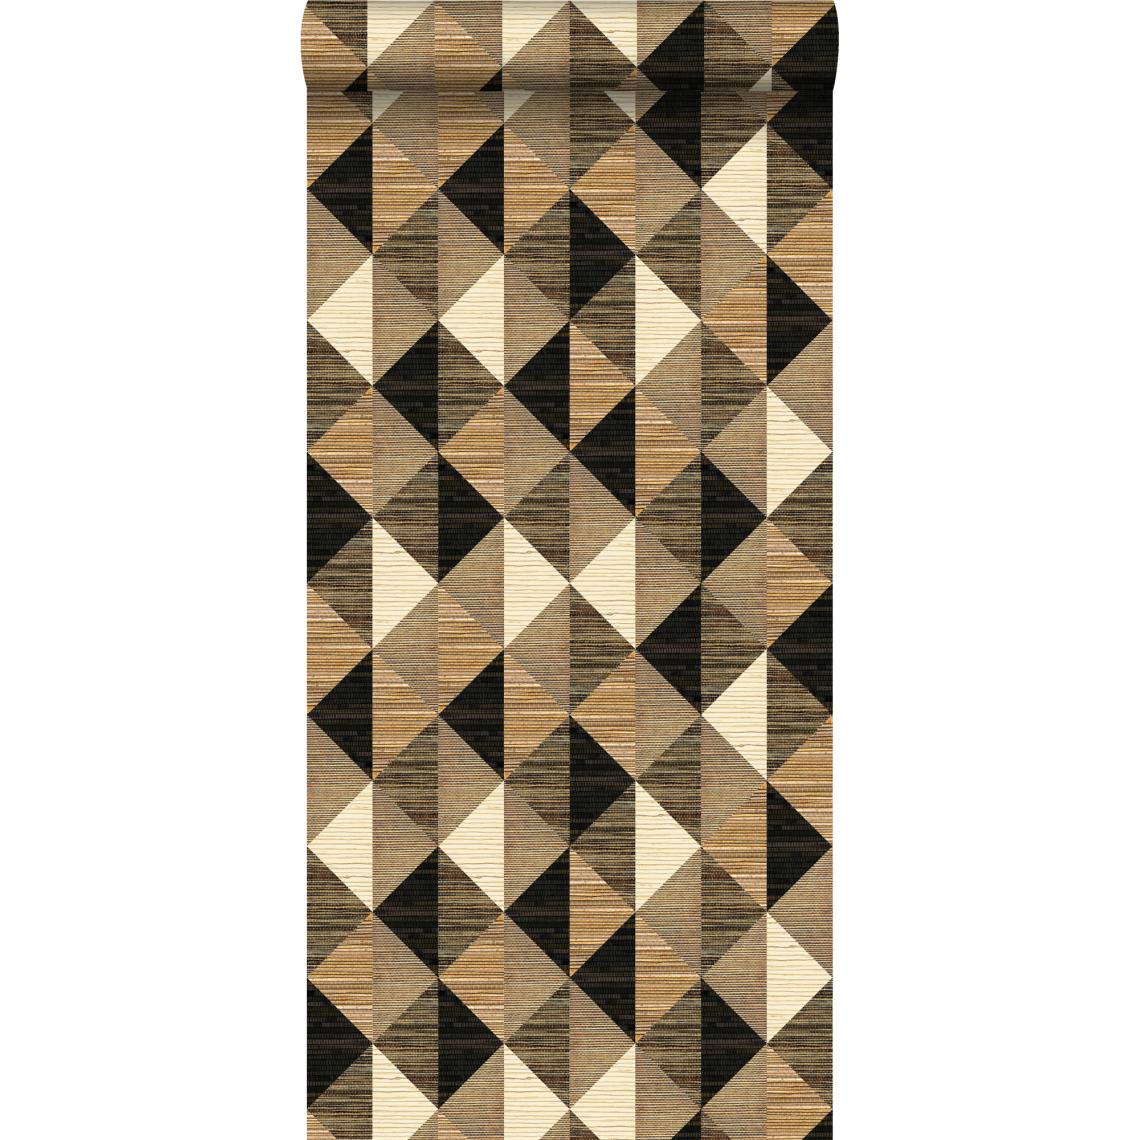 Origin - Origin papier peint intissé XXL motif graphique brun foncé et beige - 357216 - 46.5 cm x 8.37 m - Papier peint